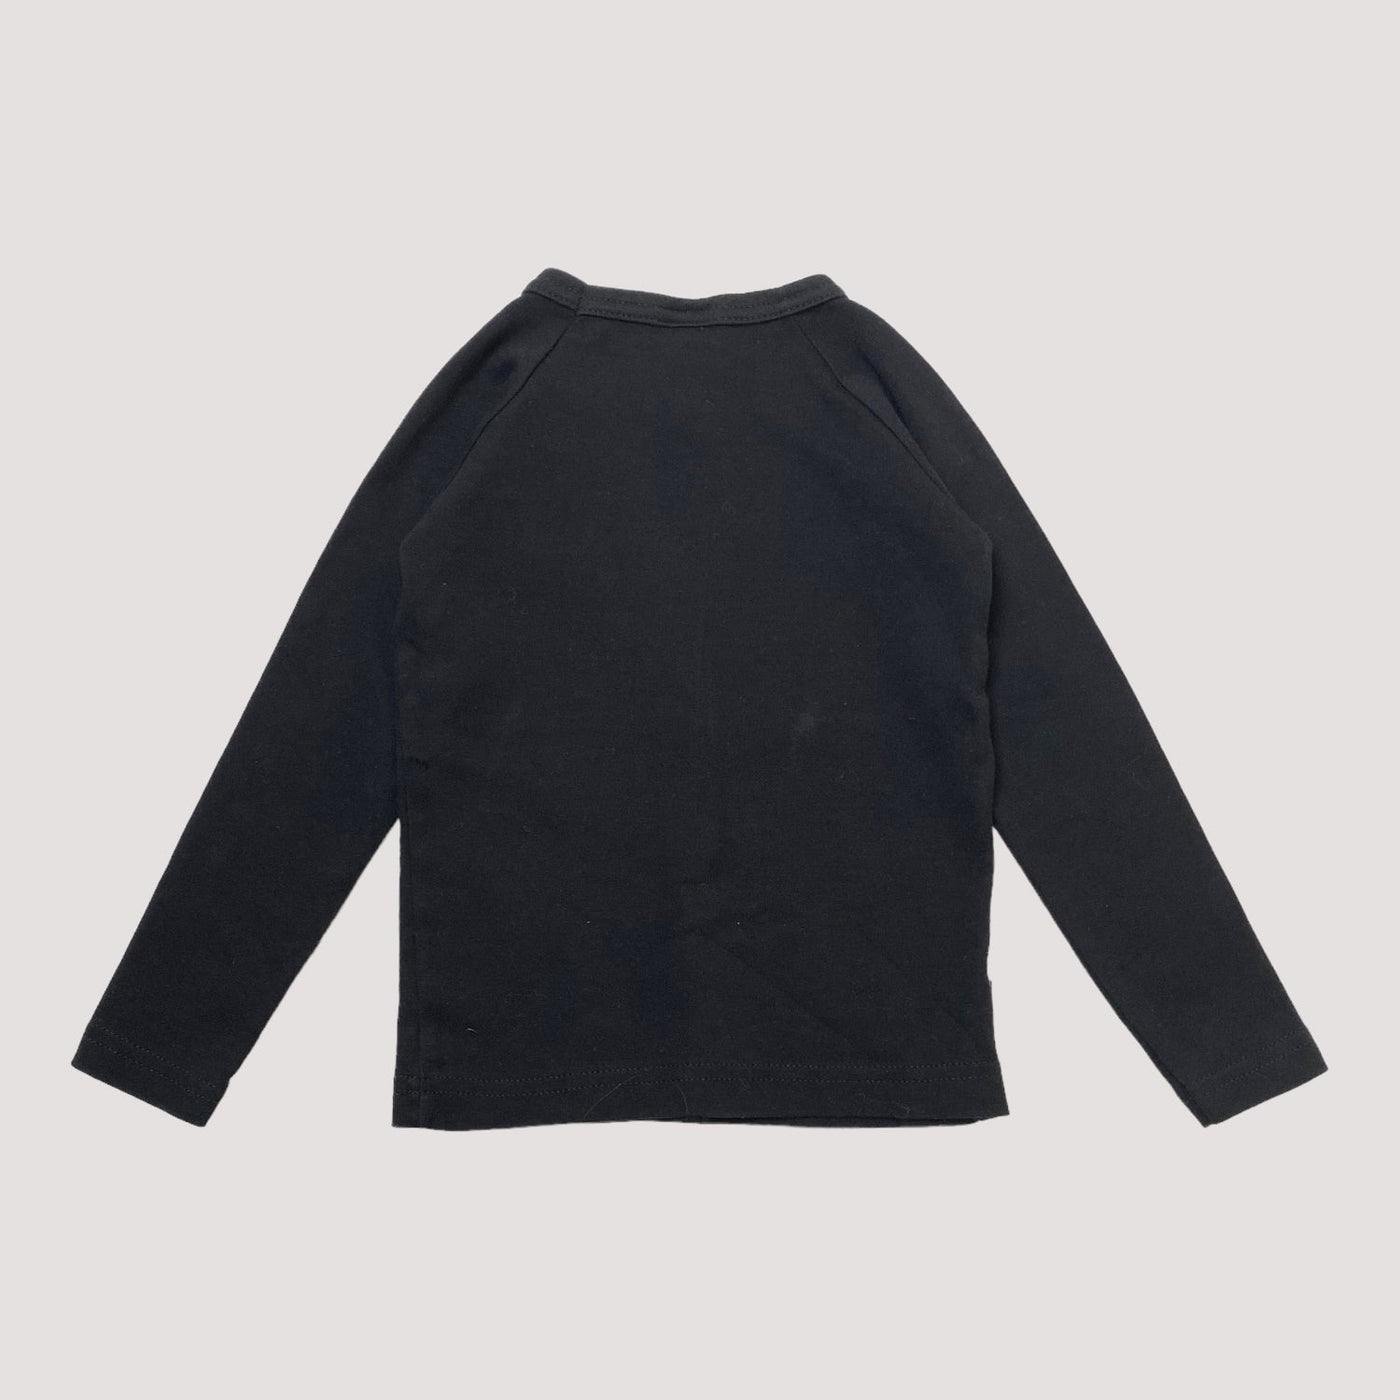 Metsola fringe shirt, black | 98cm